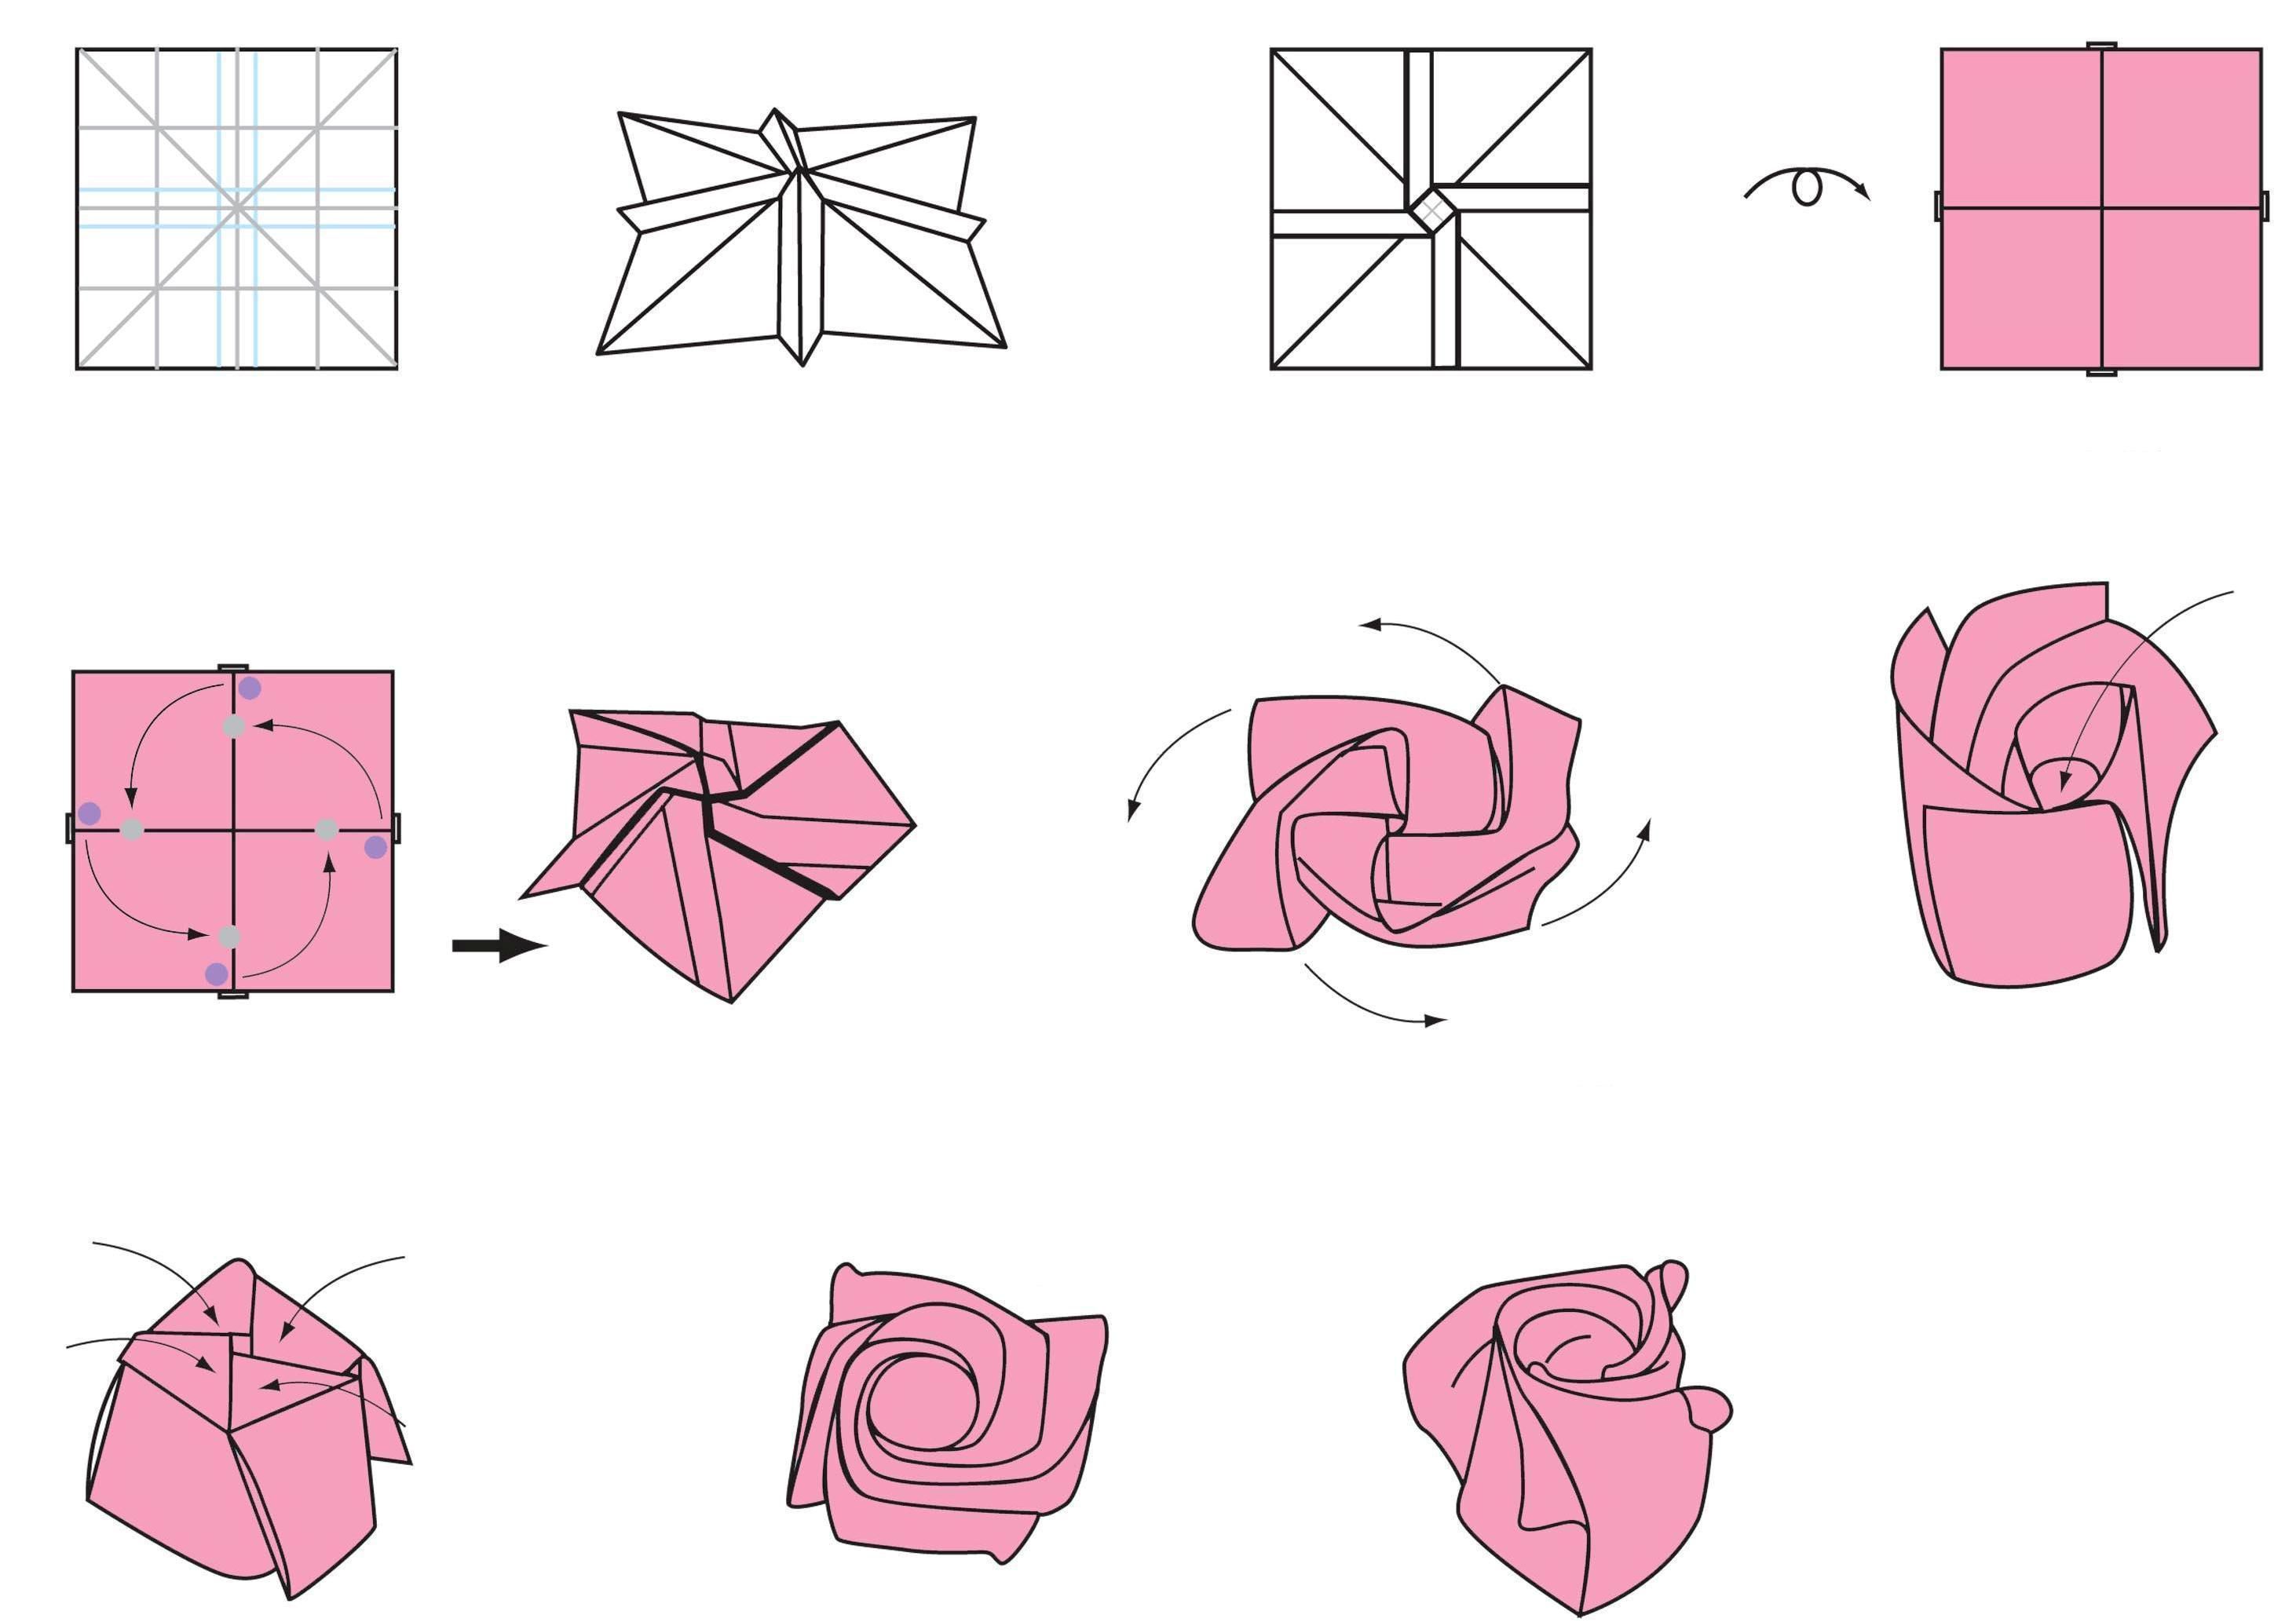 Как сделать розу из бумаги оригами